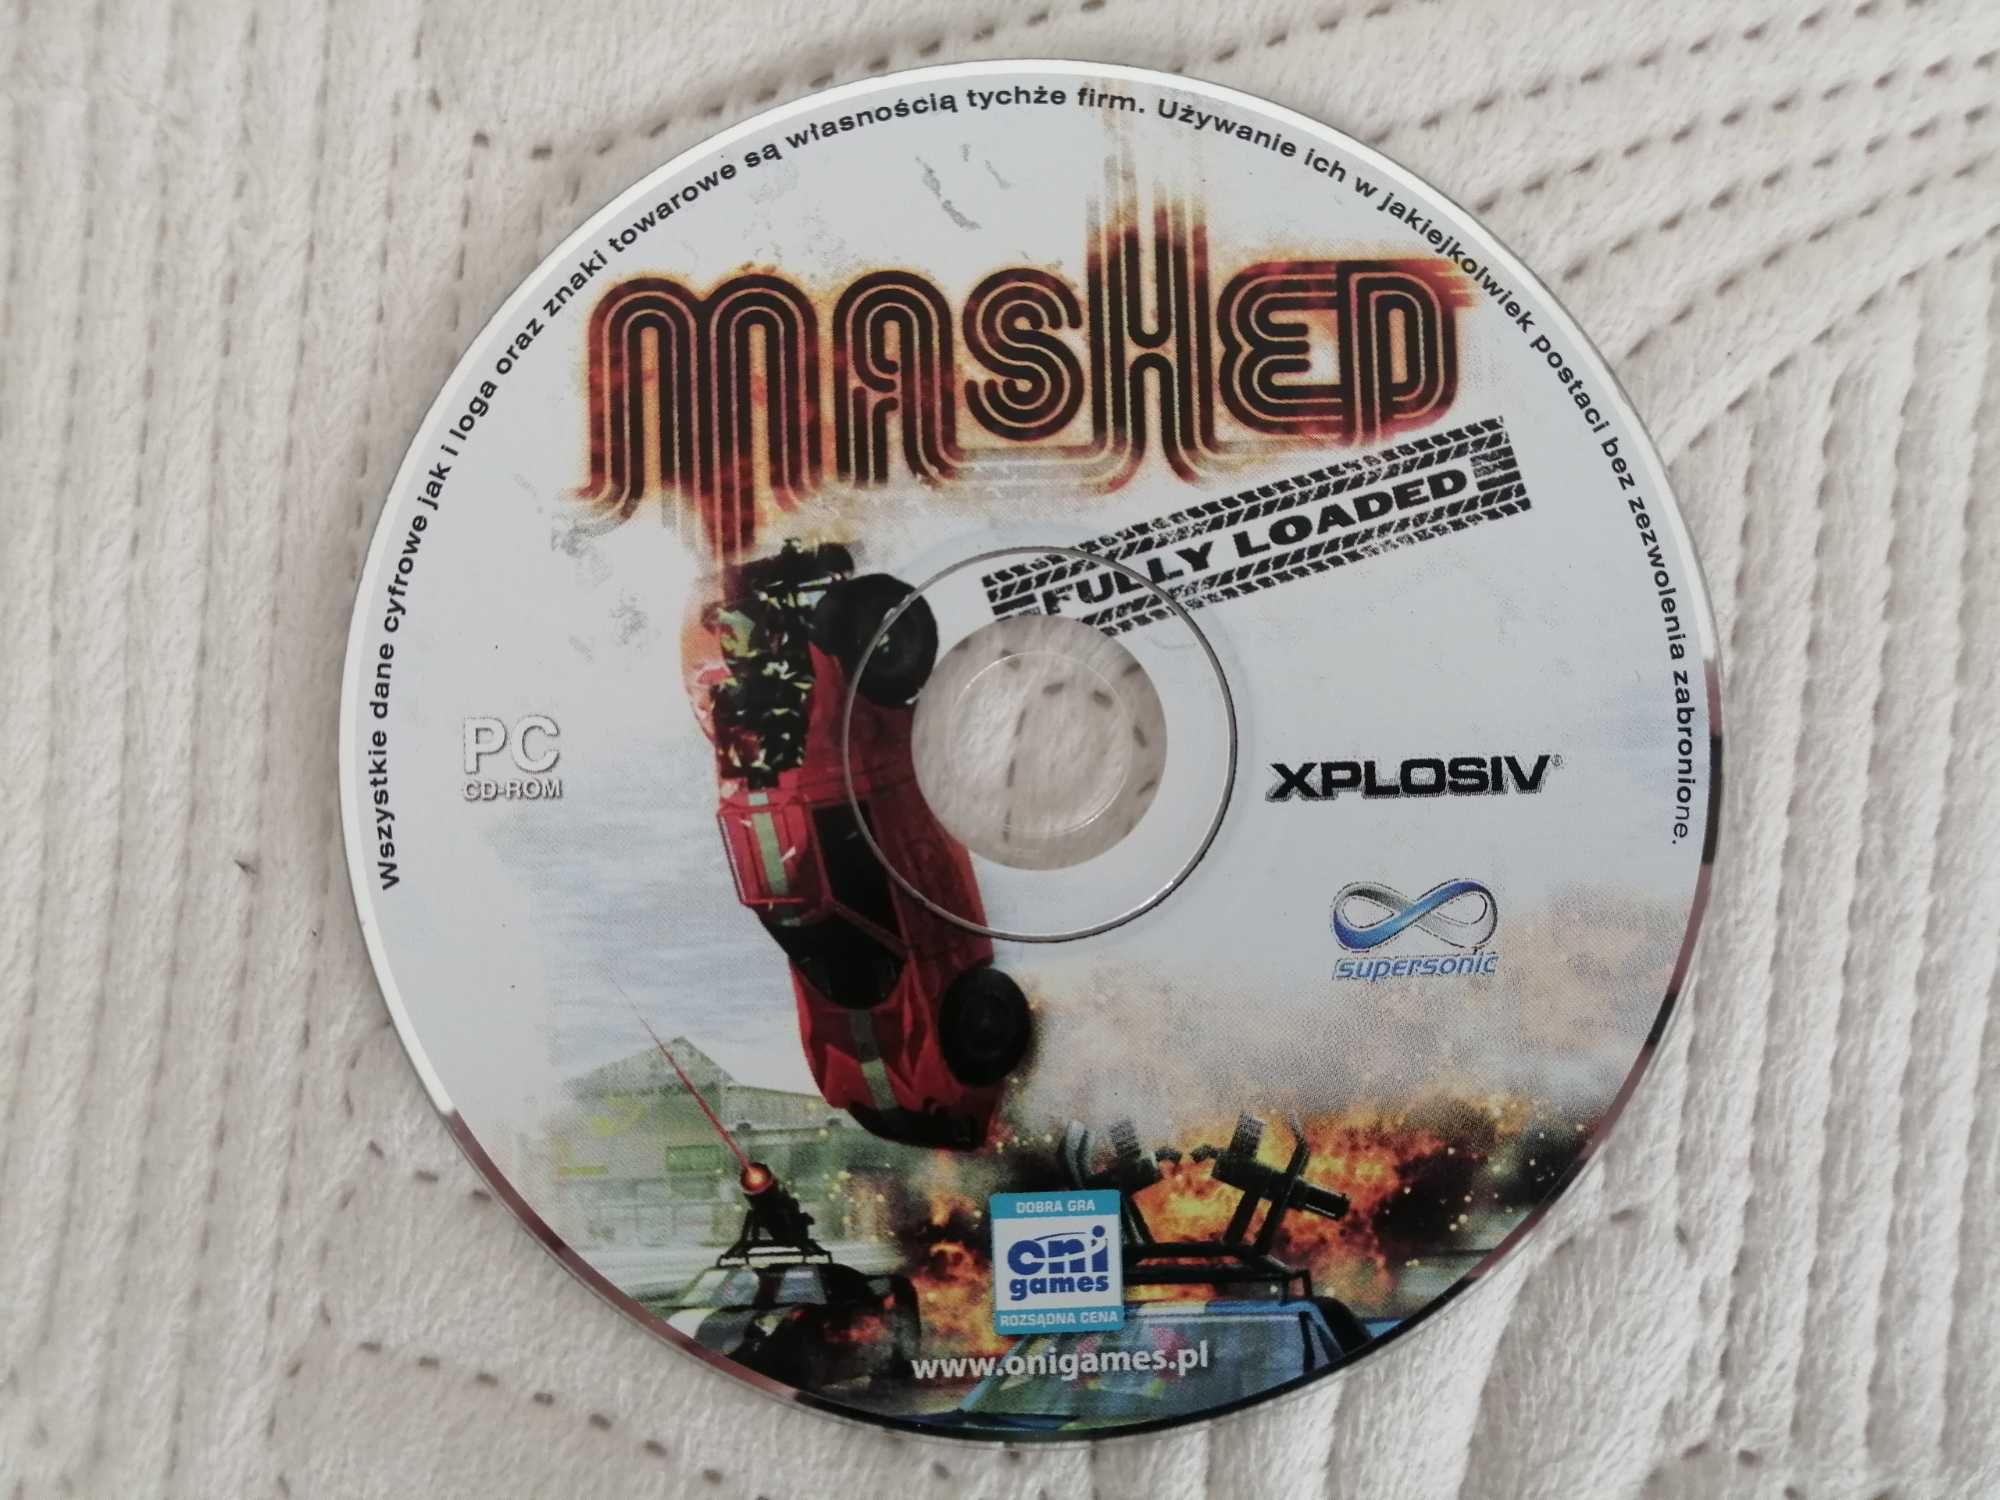 Mashed (wyścigi) gra PC